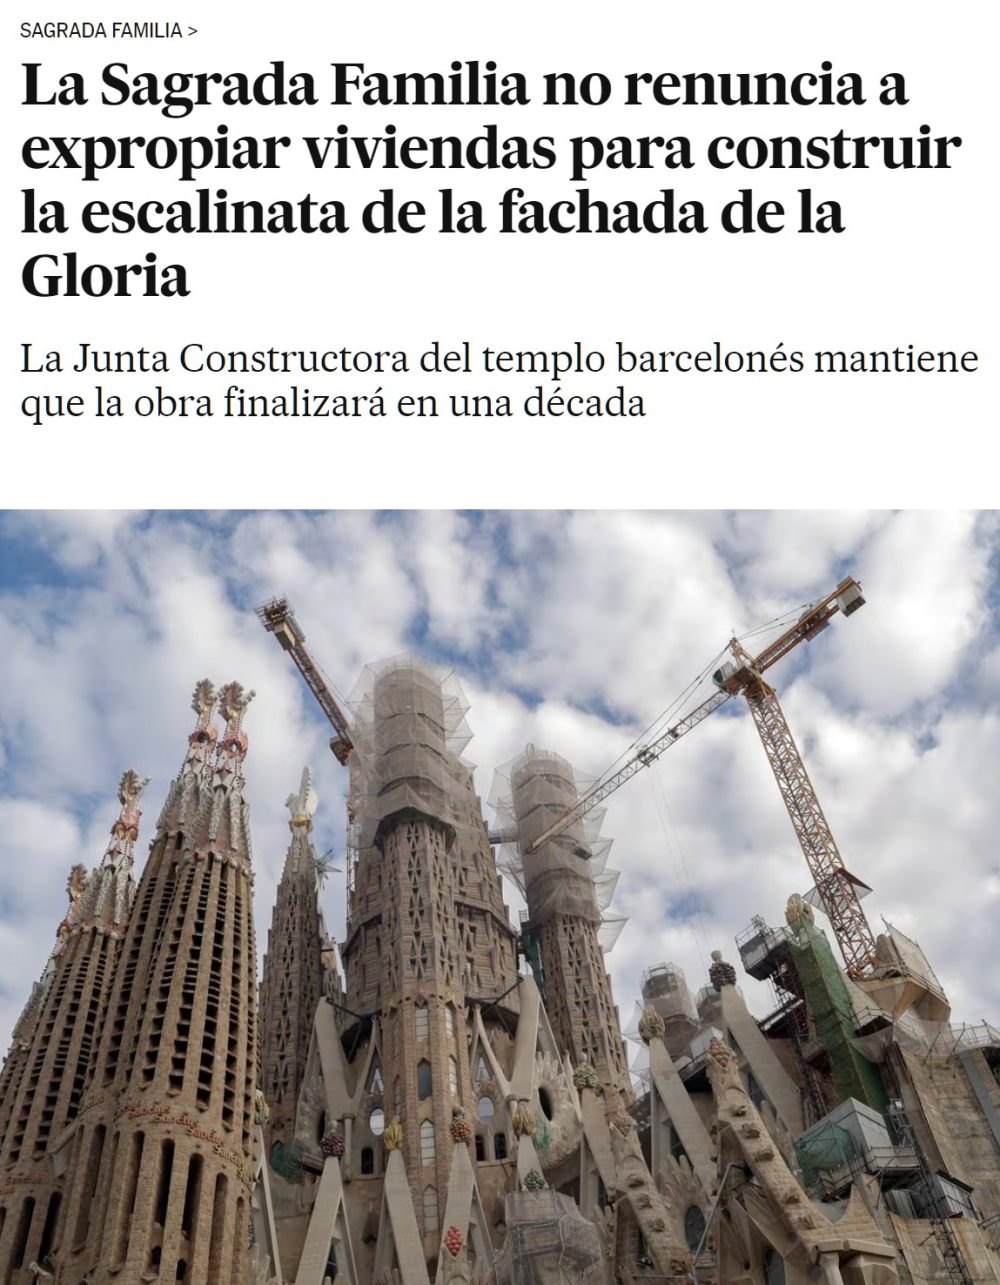 La Sagrada Familia mantiene la amenaza de expropiar viviendas de vecinos para culminar la obra de Gaudí. “No renunciamos al proyecto original y allí estaba la escalinata del portal de la Gloria”. Su construcción afectará a 3.000 pisos.